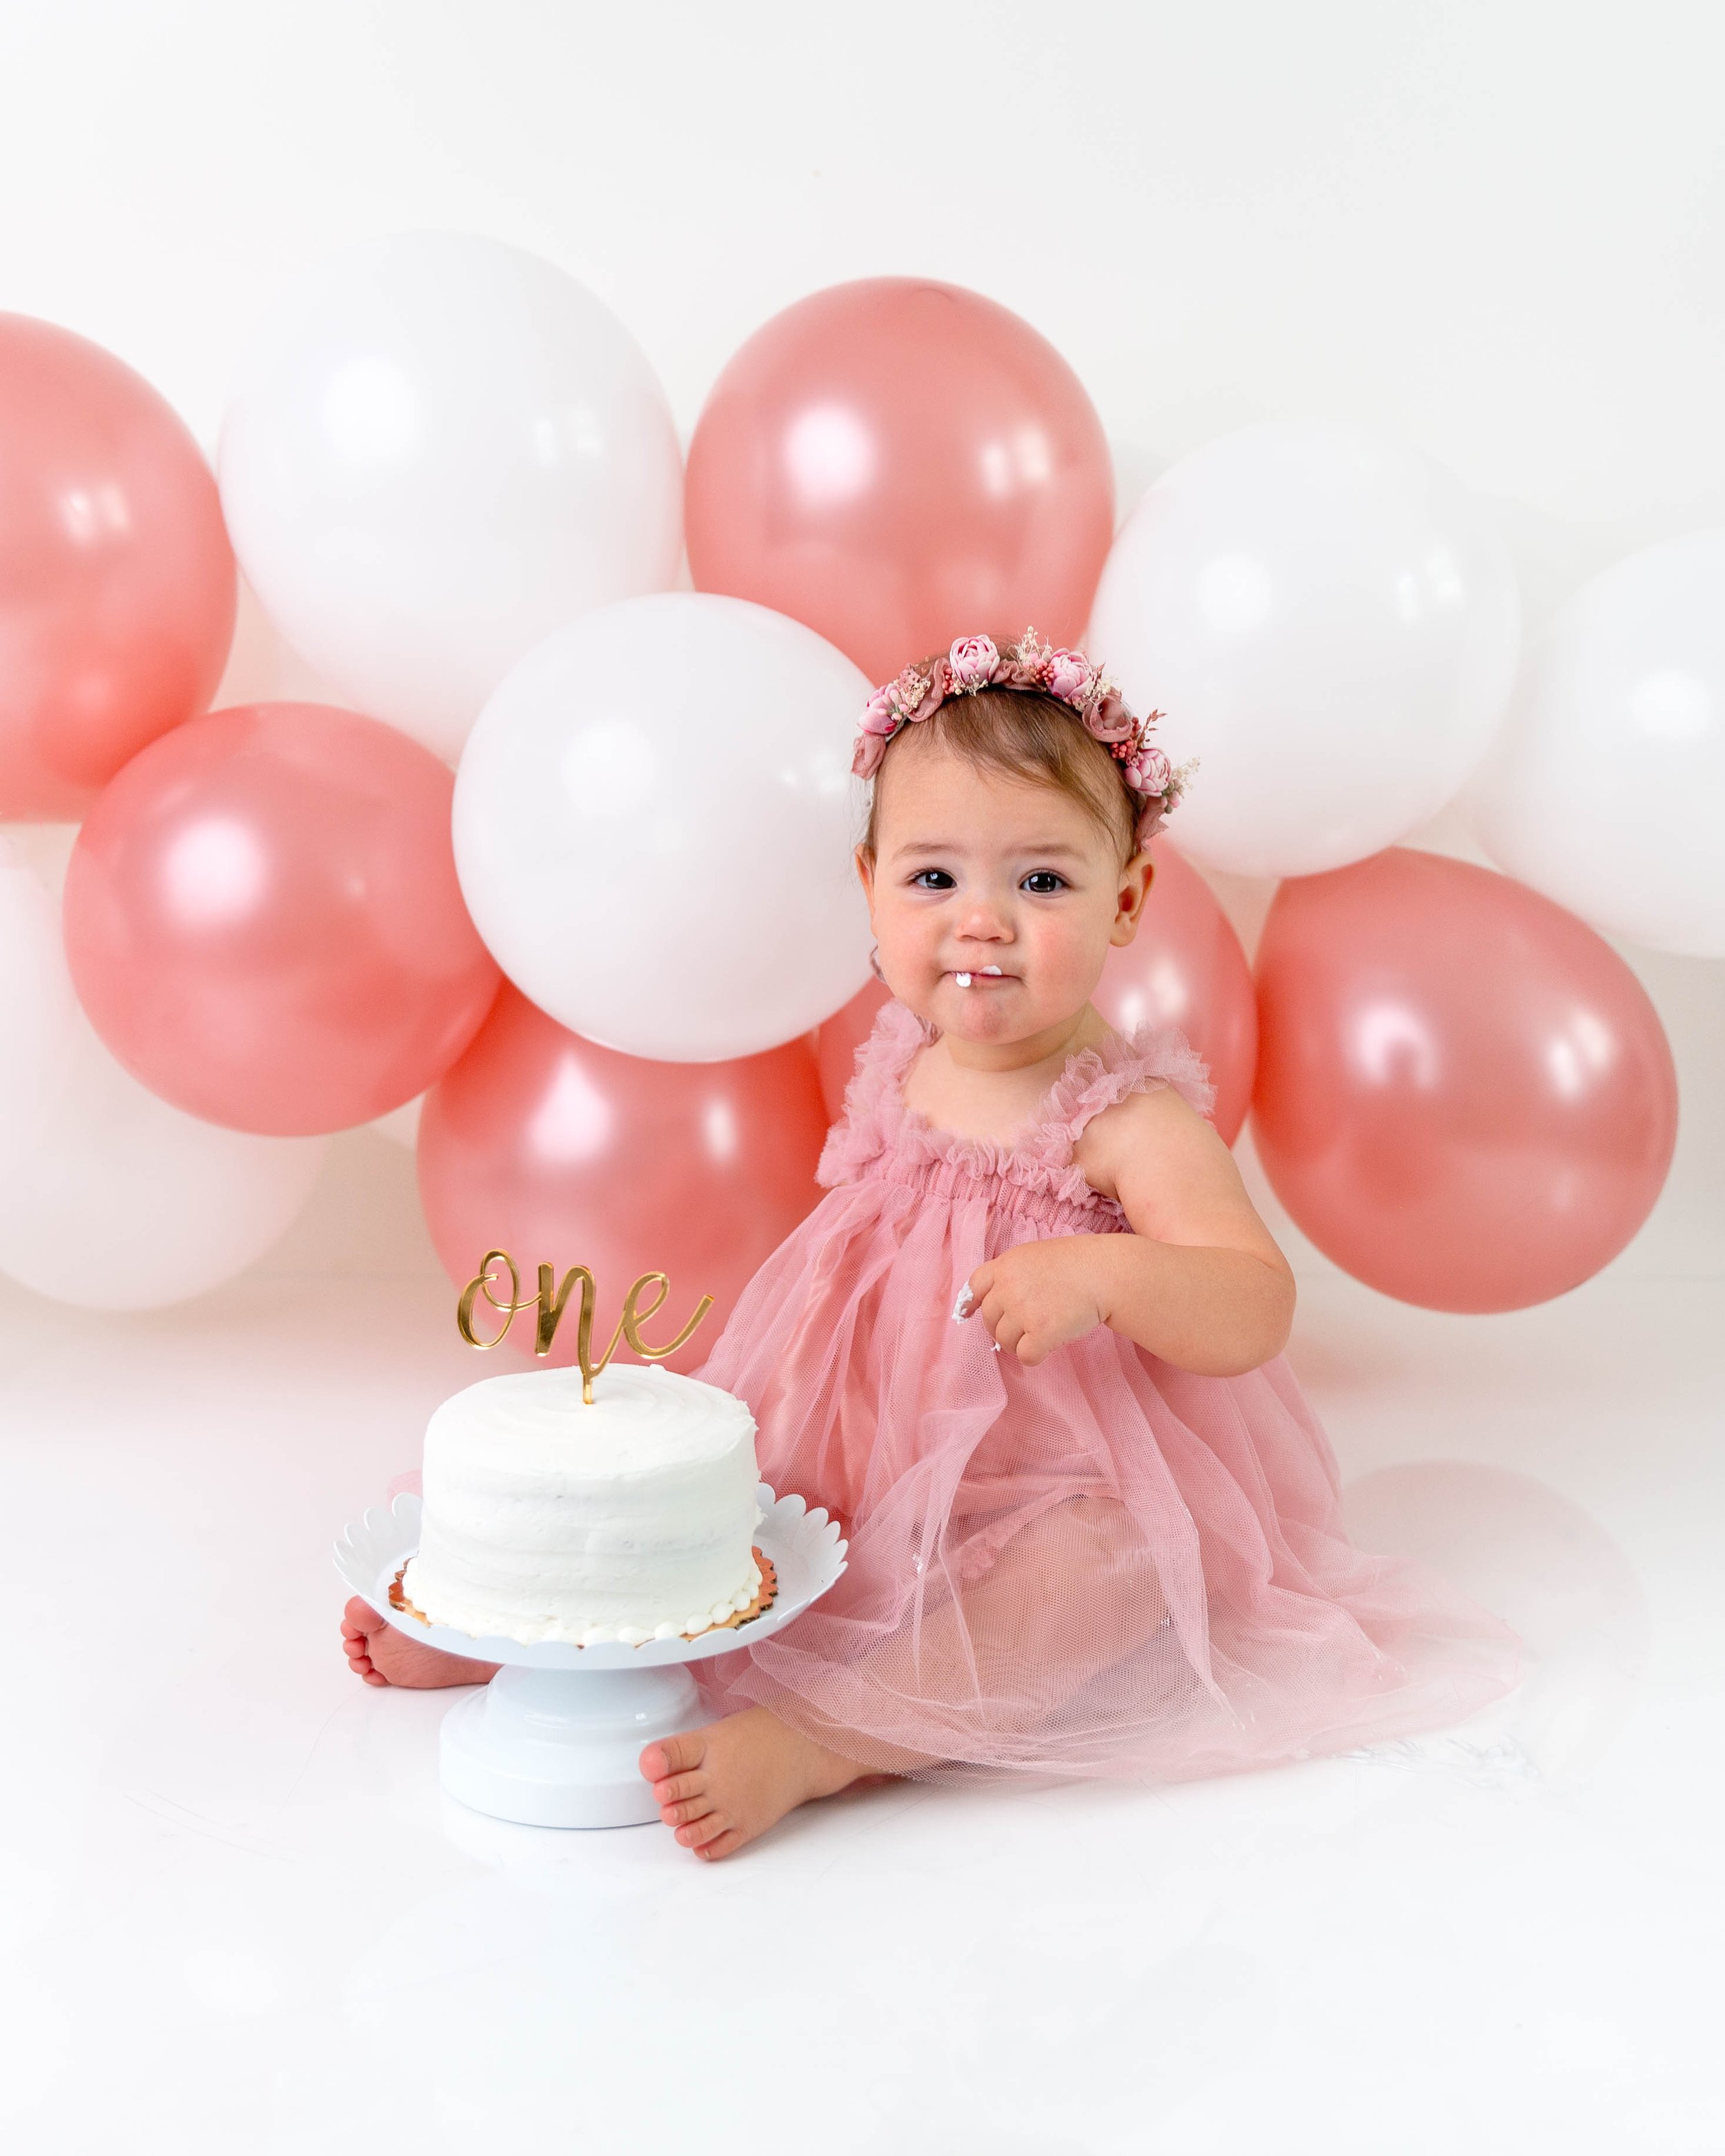 cake-smash-photos-one-year-images-milestone-photography-newborn-photographer-spokane-washington-3.jpg